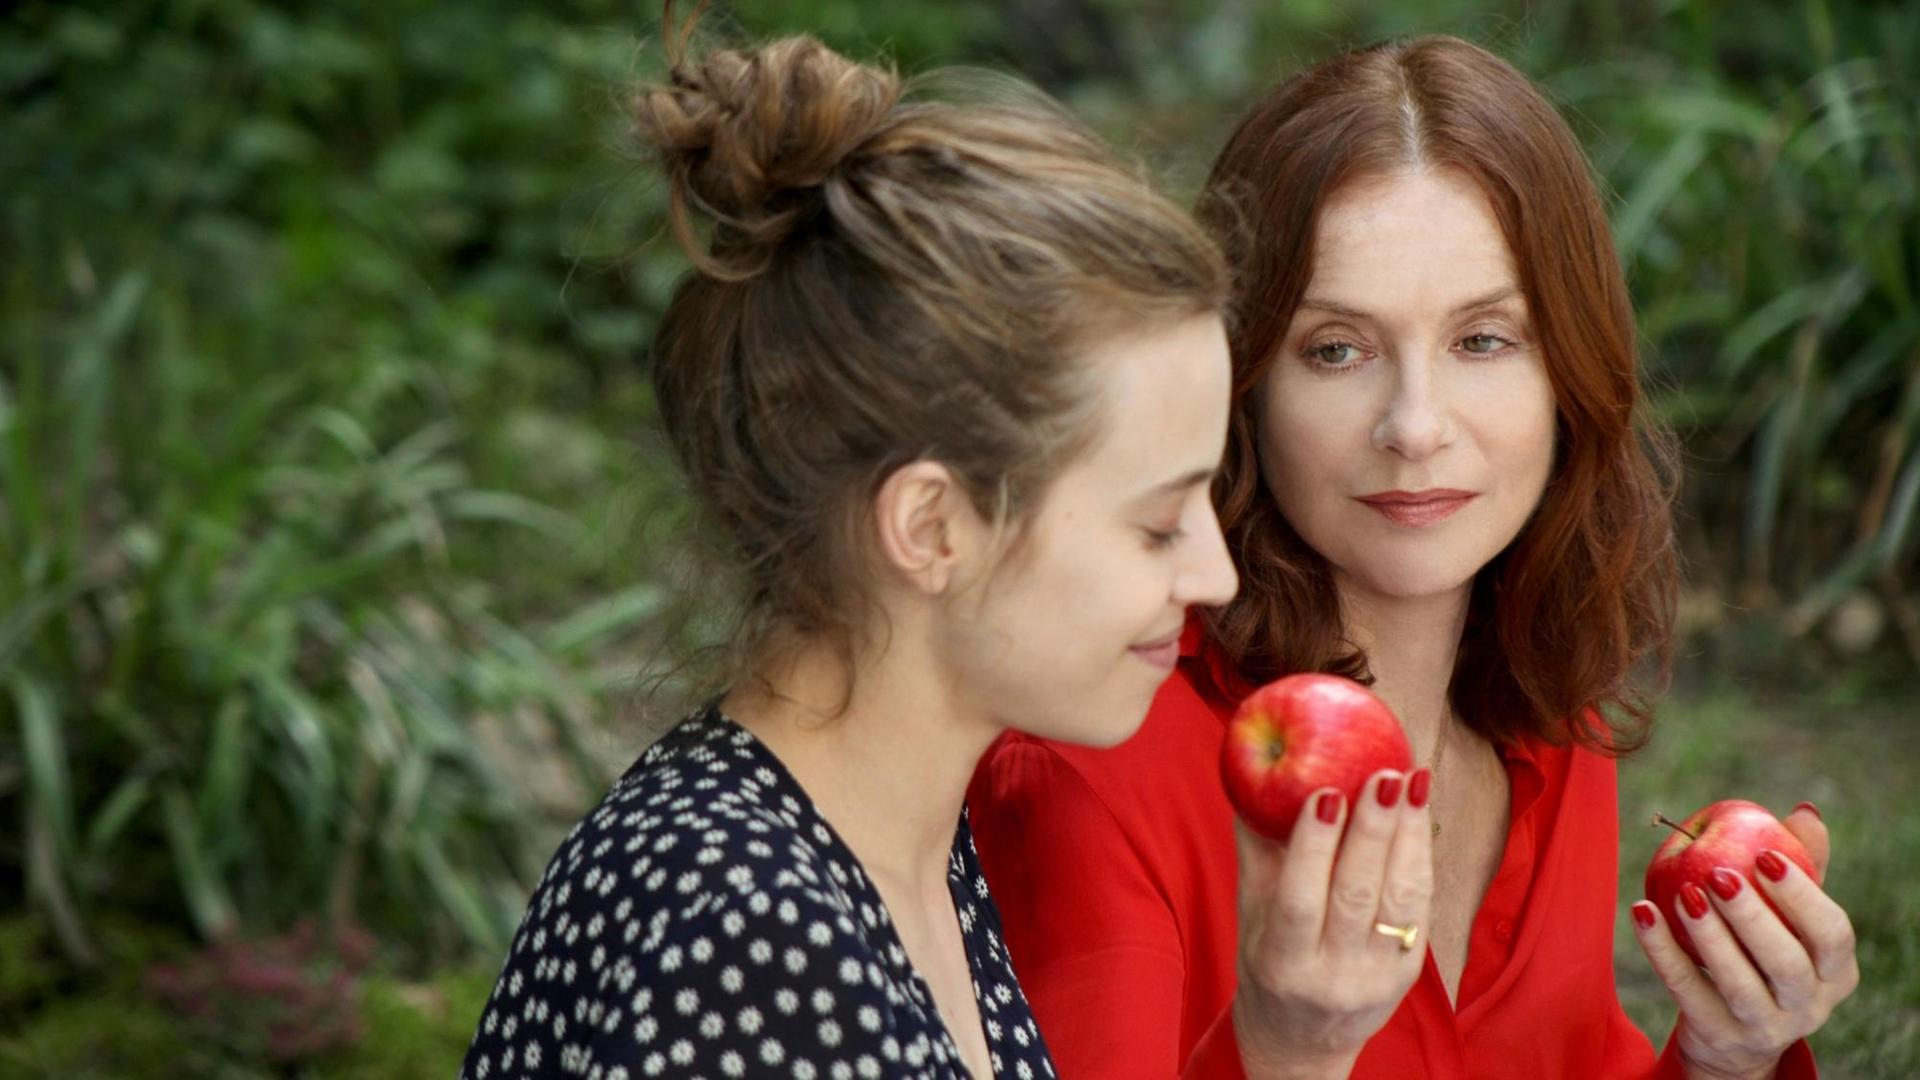 "Scheewittchen" bekommt von der "bösen Stiefmutter" eine Apfel gereicht.